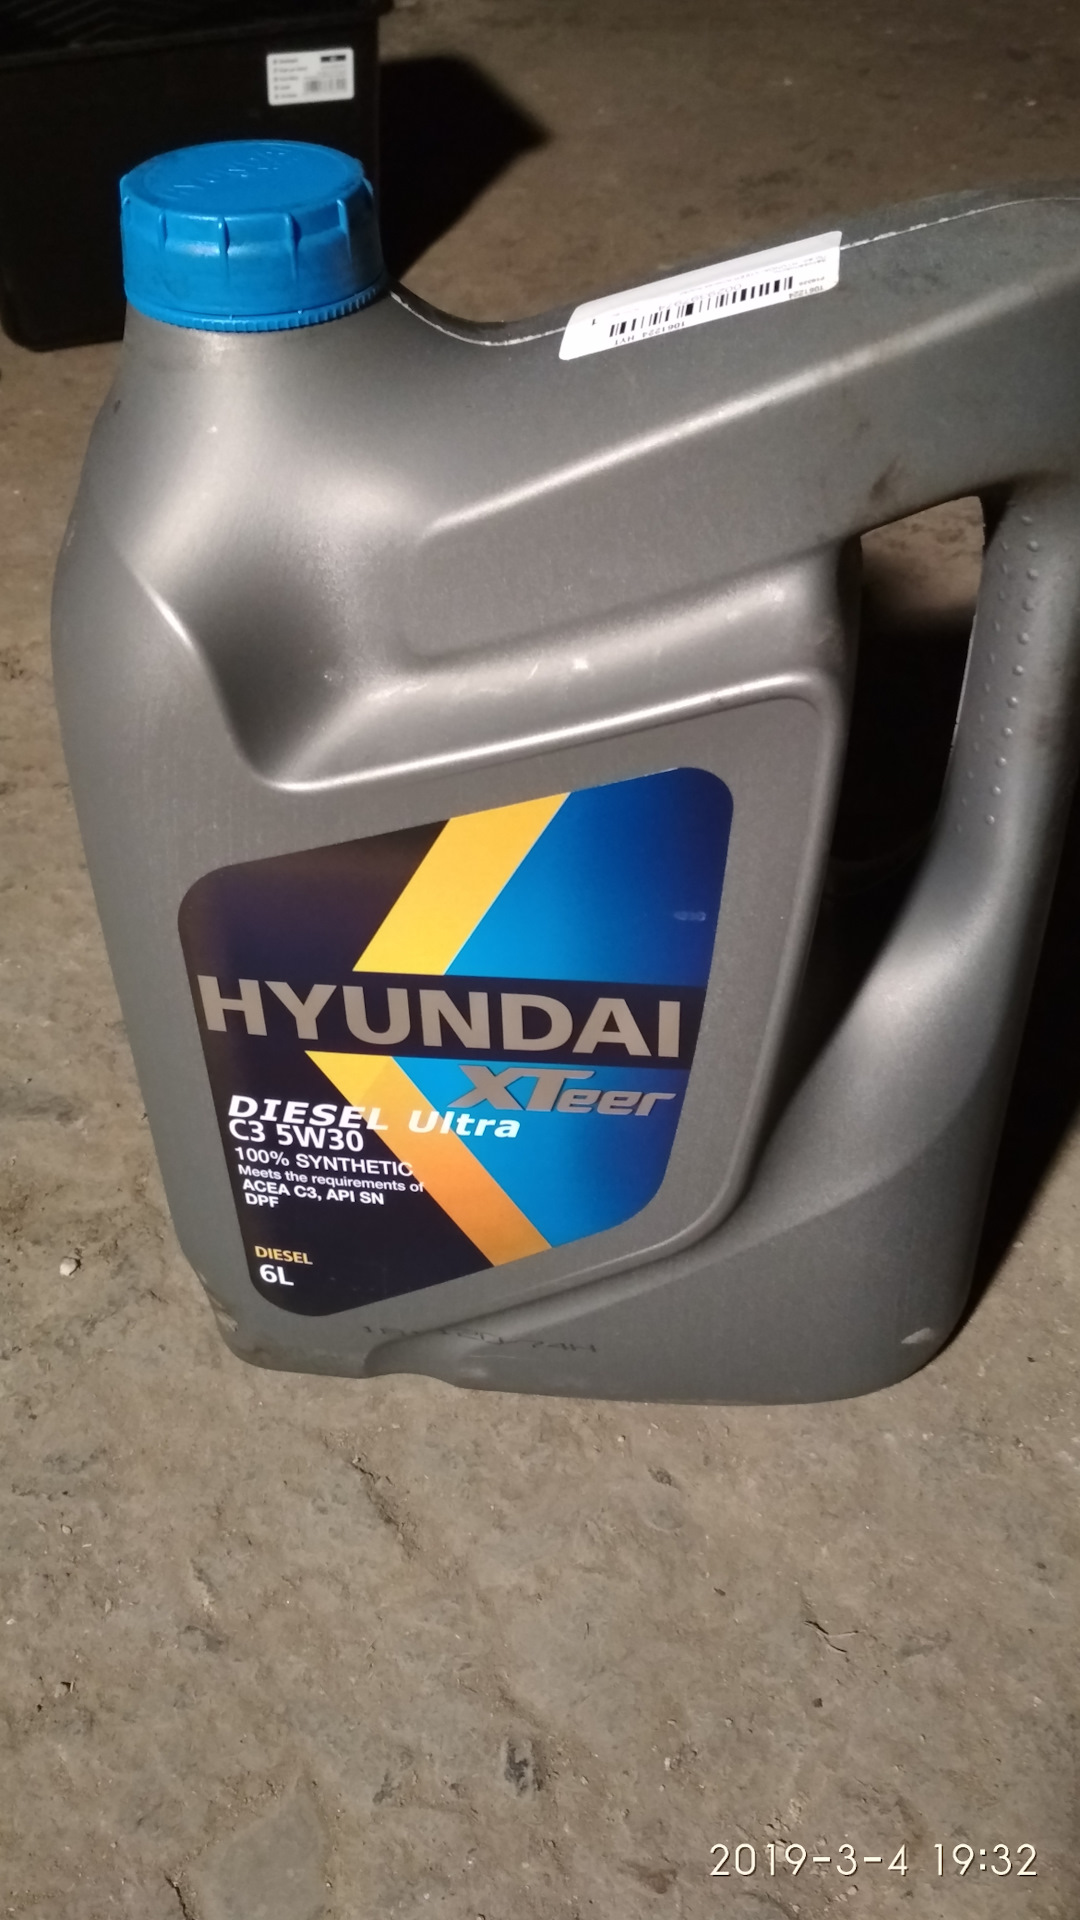 Hyundai xteer diesel ultra. Hyundai XTEER дизель 5 литров. Масло Хендай 5w30 дизель. Дизельное коммерческое масло Хендай. Масло Хундай Оригинальное дизель ультра с 3.